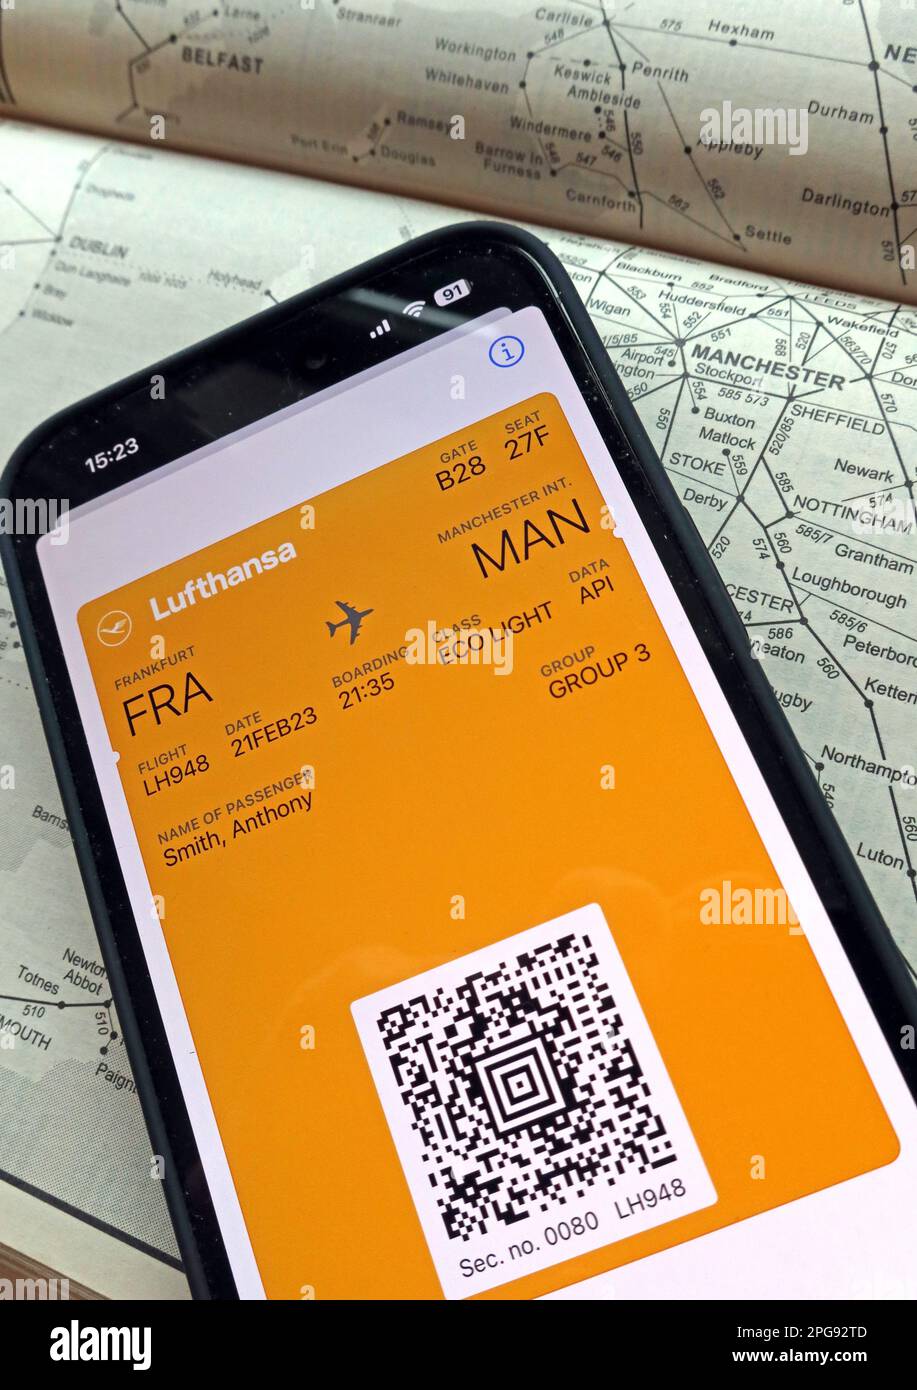 Carte d'embarquement numérique de vol d'avion FRA-MAN sur téléphone mobile, avec Lufthansa, et carte de transport ferroviaire de Manchester, dans le nord-ouest de l'Angleterre Banque D'Images